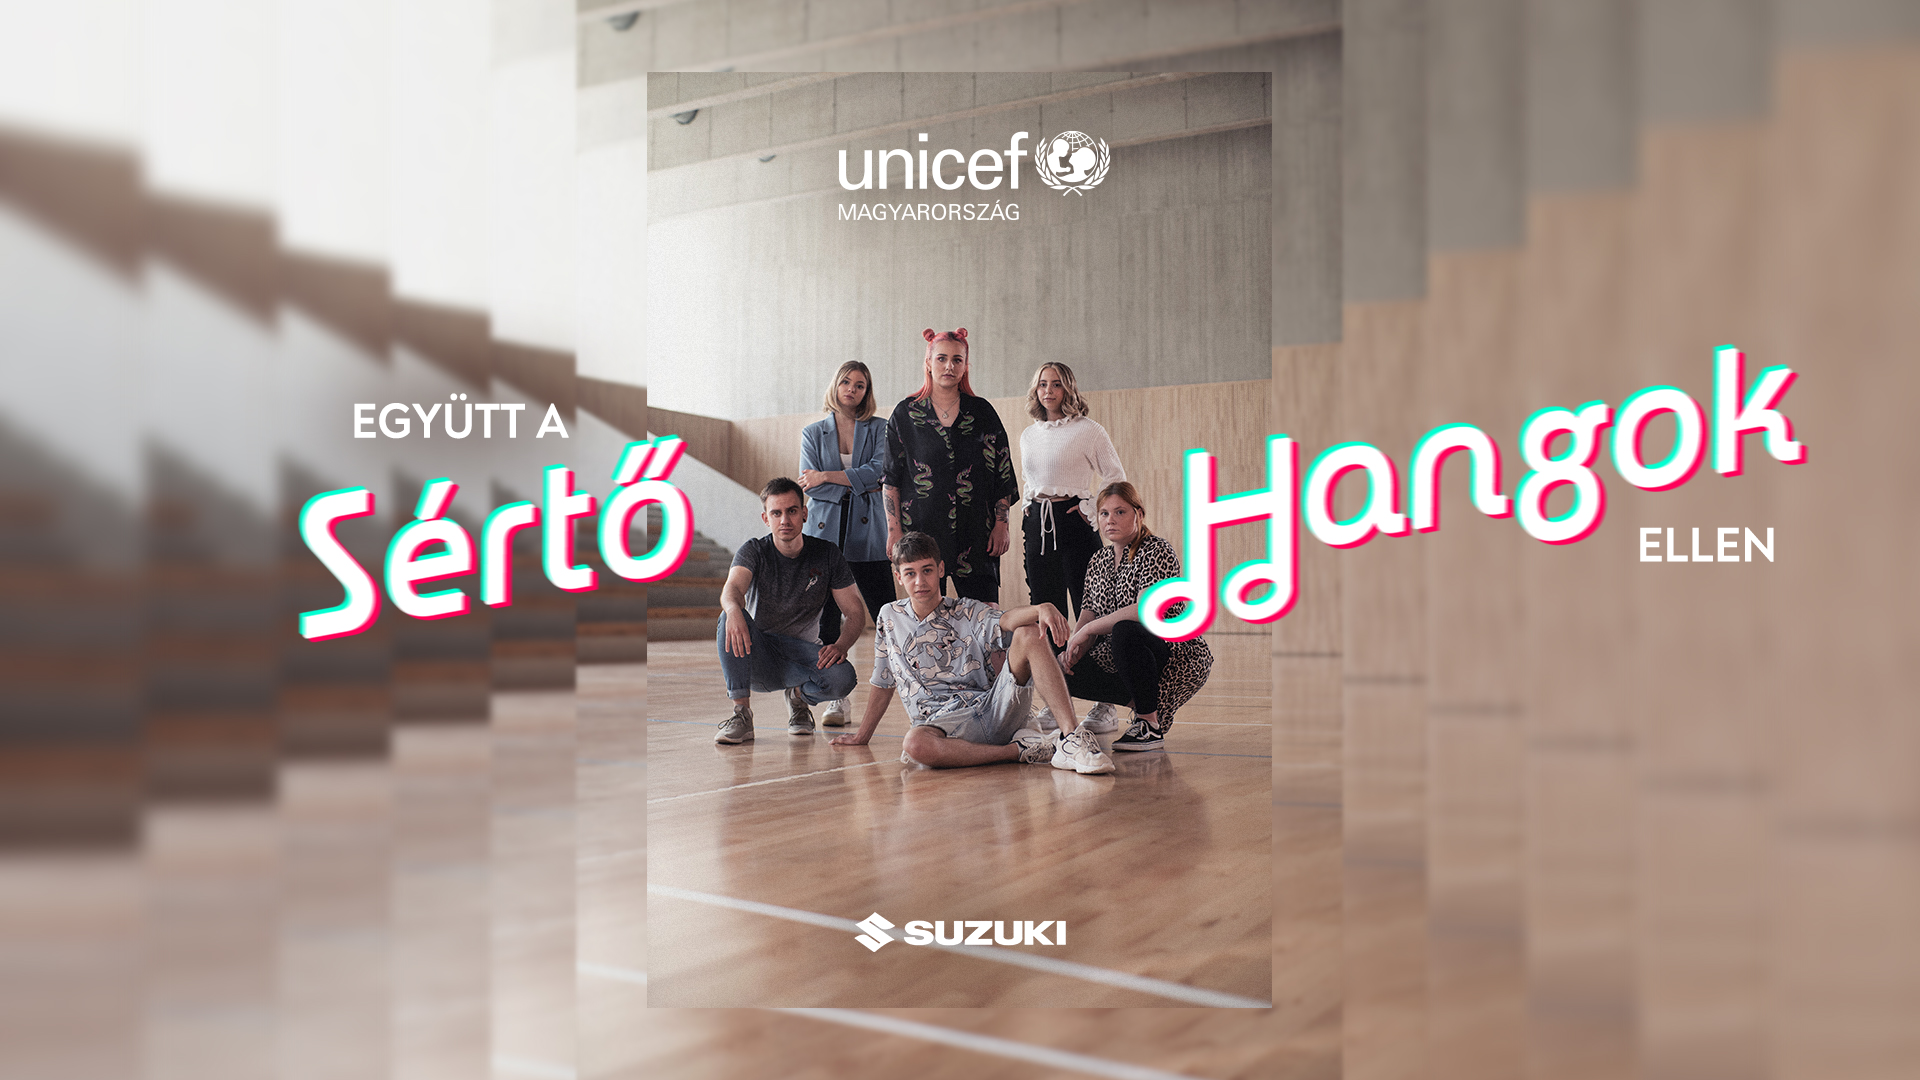 1,5 millió megtekintést ért el két hét alatt az UNICEF Magyarország TikTok netes bántalmazás elleni kampánya